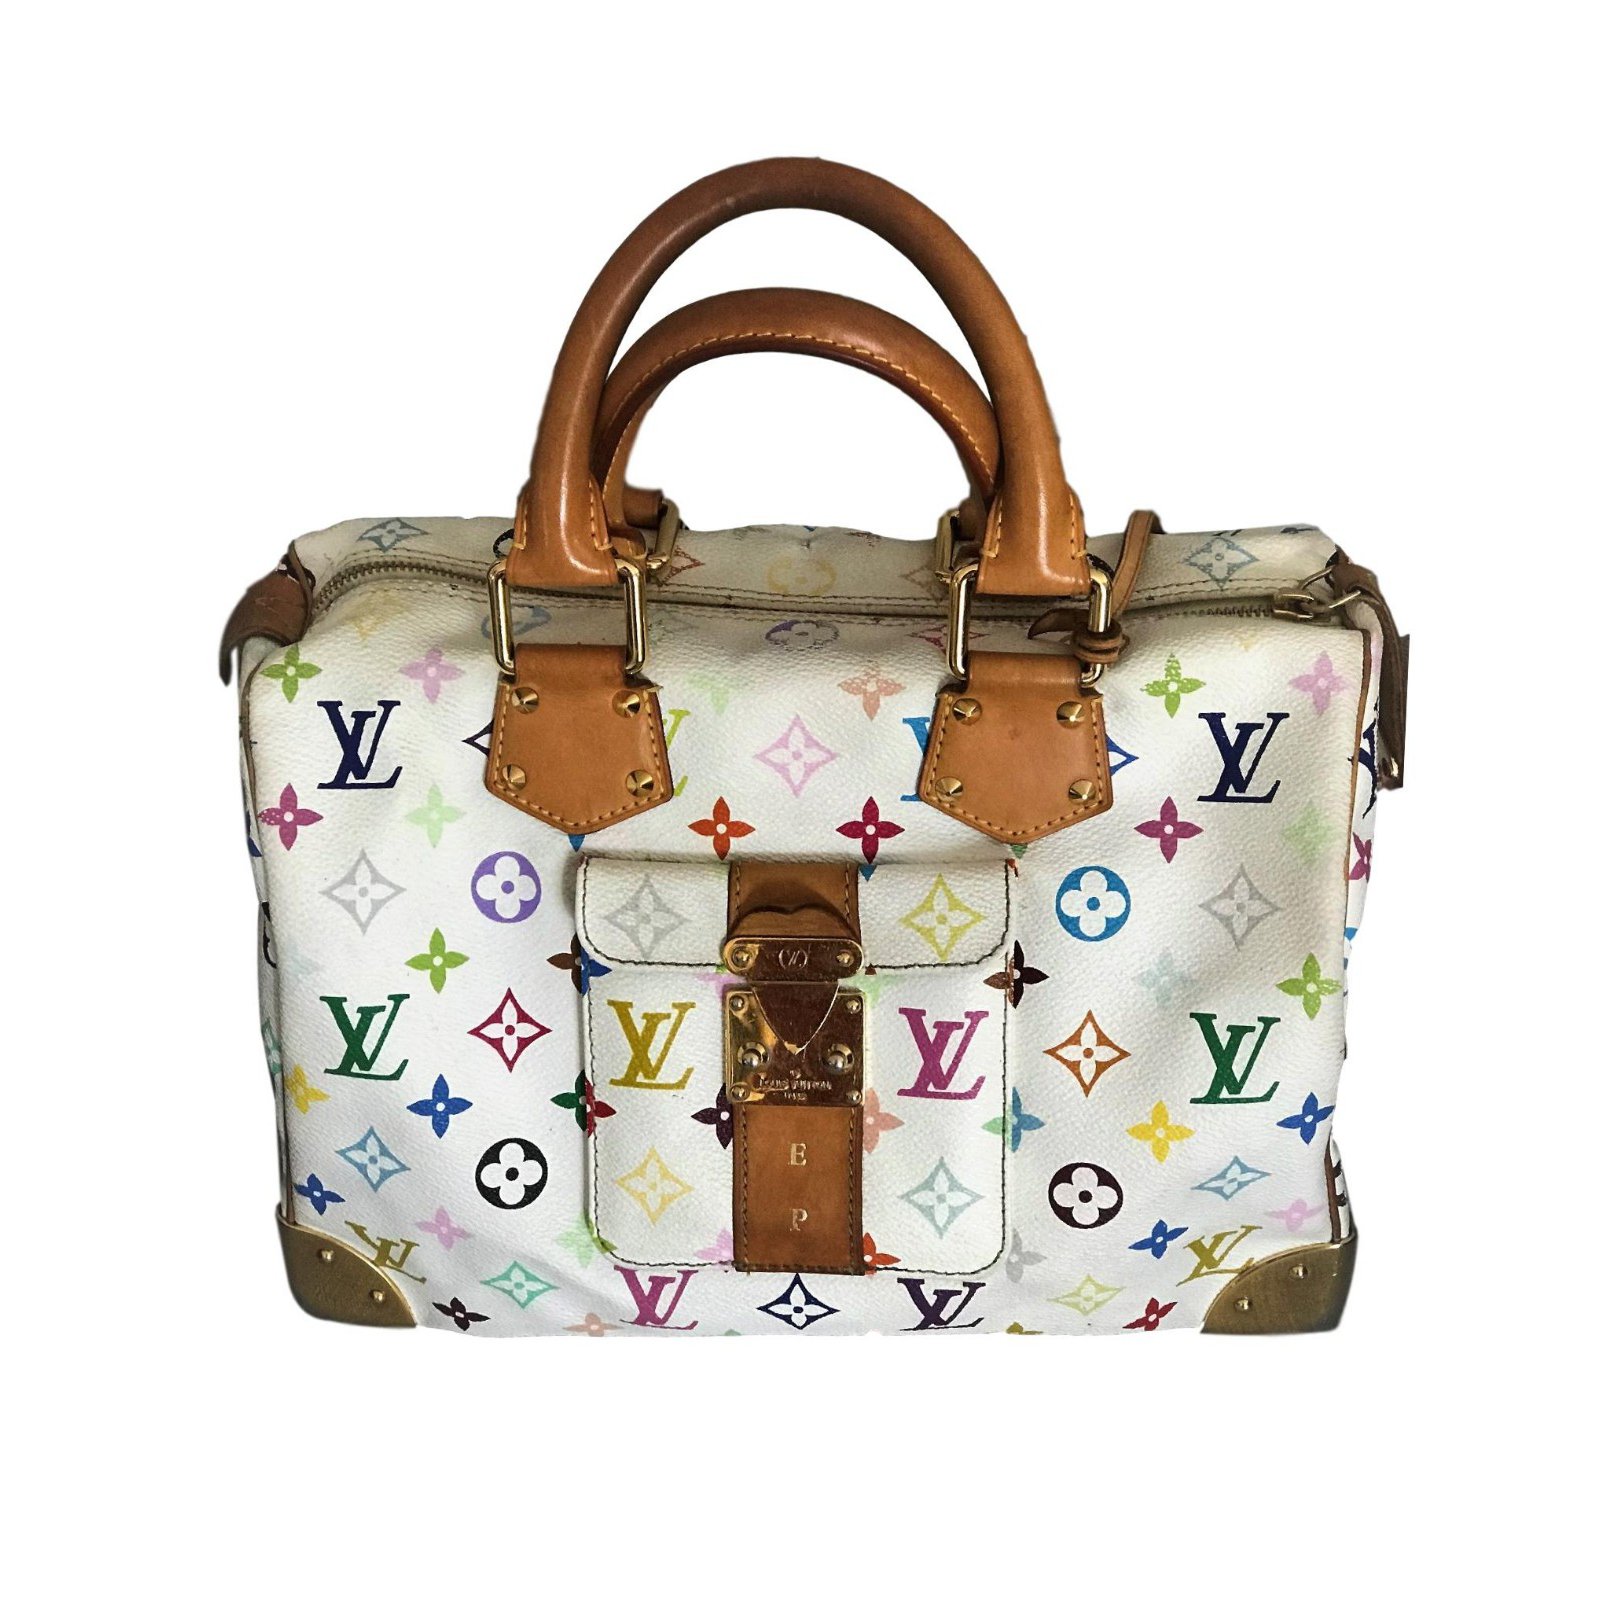 Speedy bag 30cm Louis Vuitton limited edition Multiple colors